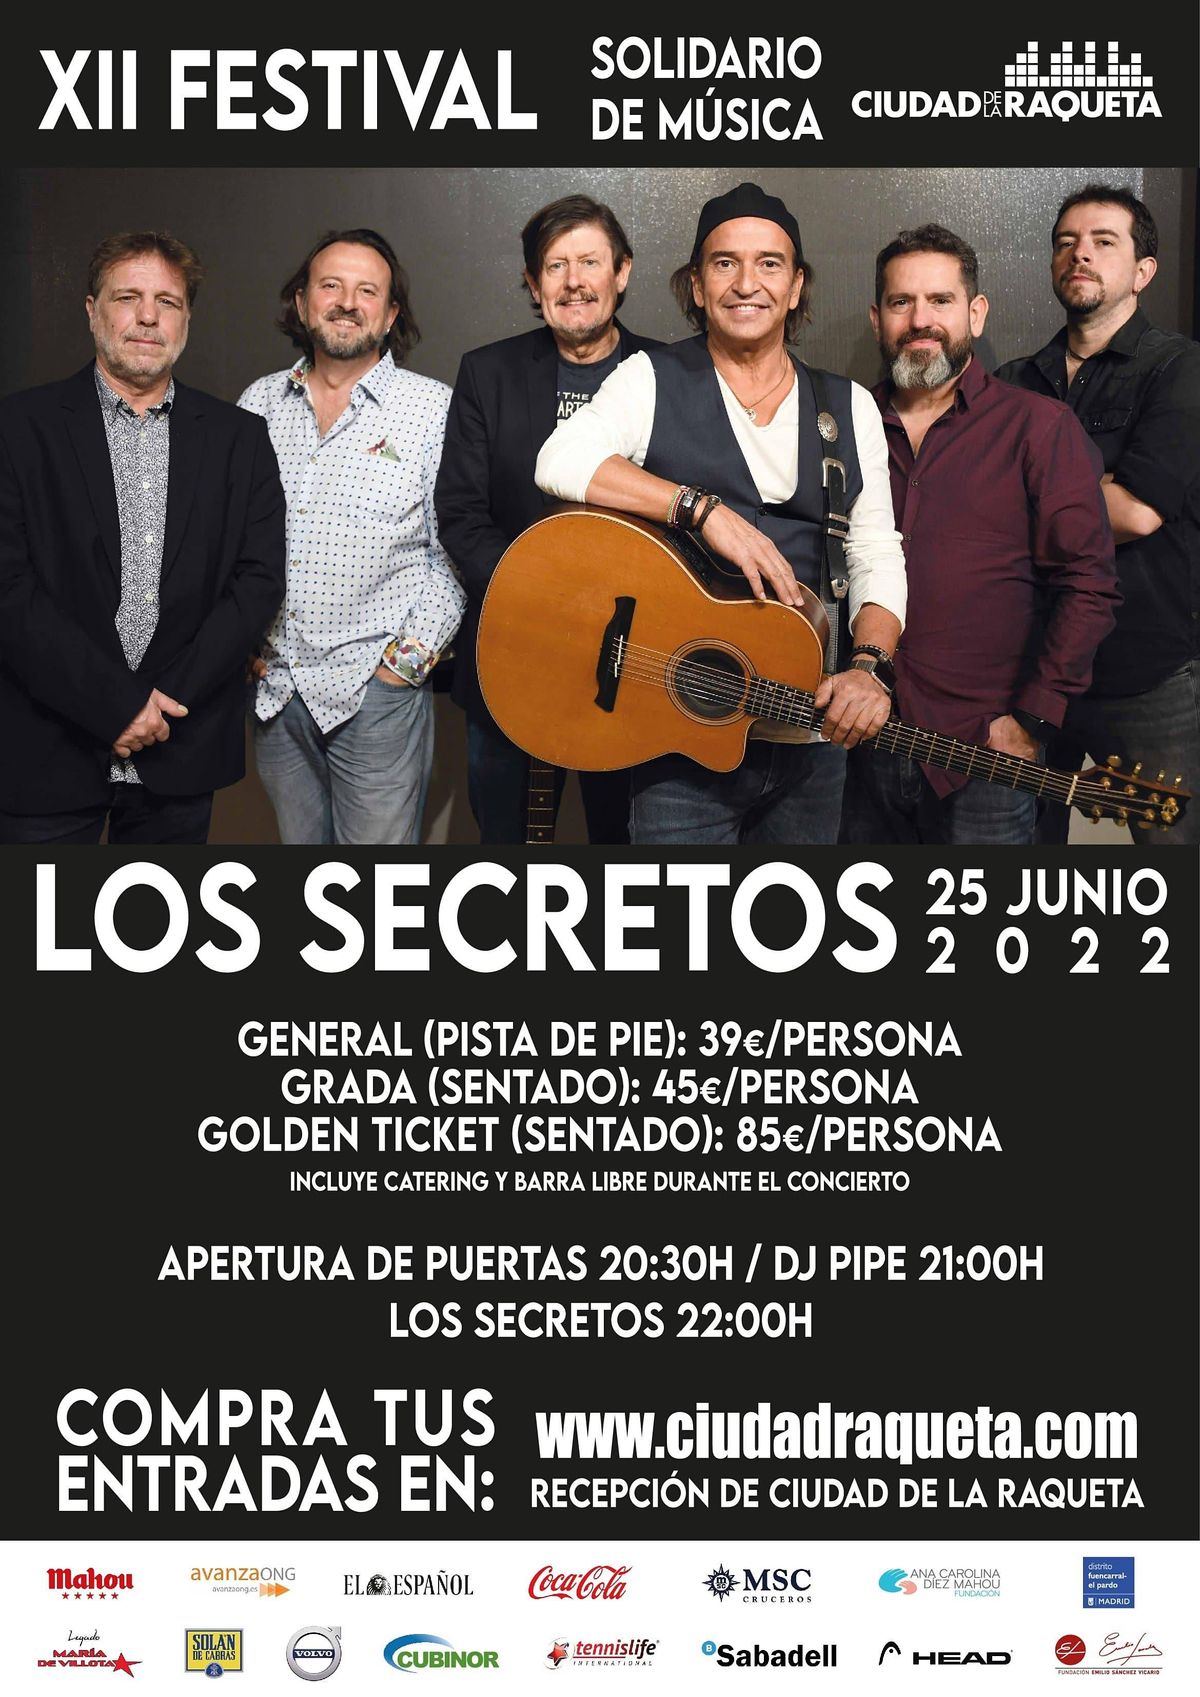 Los Secretos XII Festival Solidario de M\u00fasica Ciudad de la Raqueta